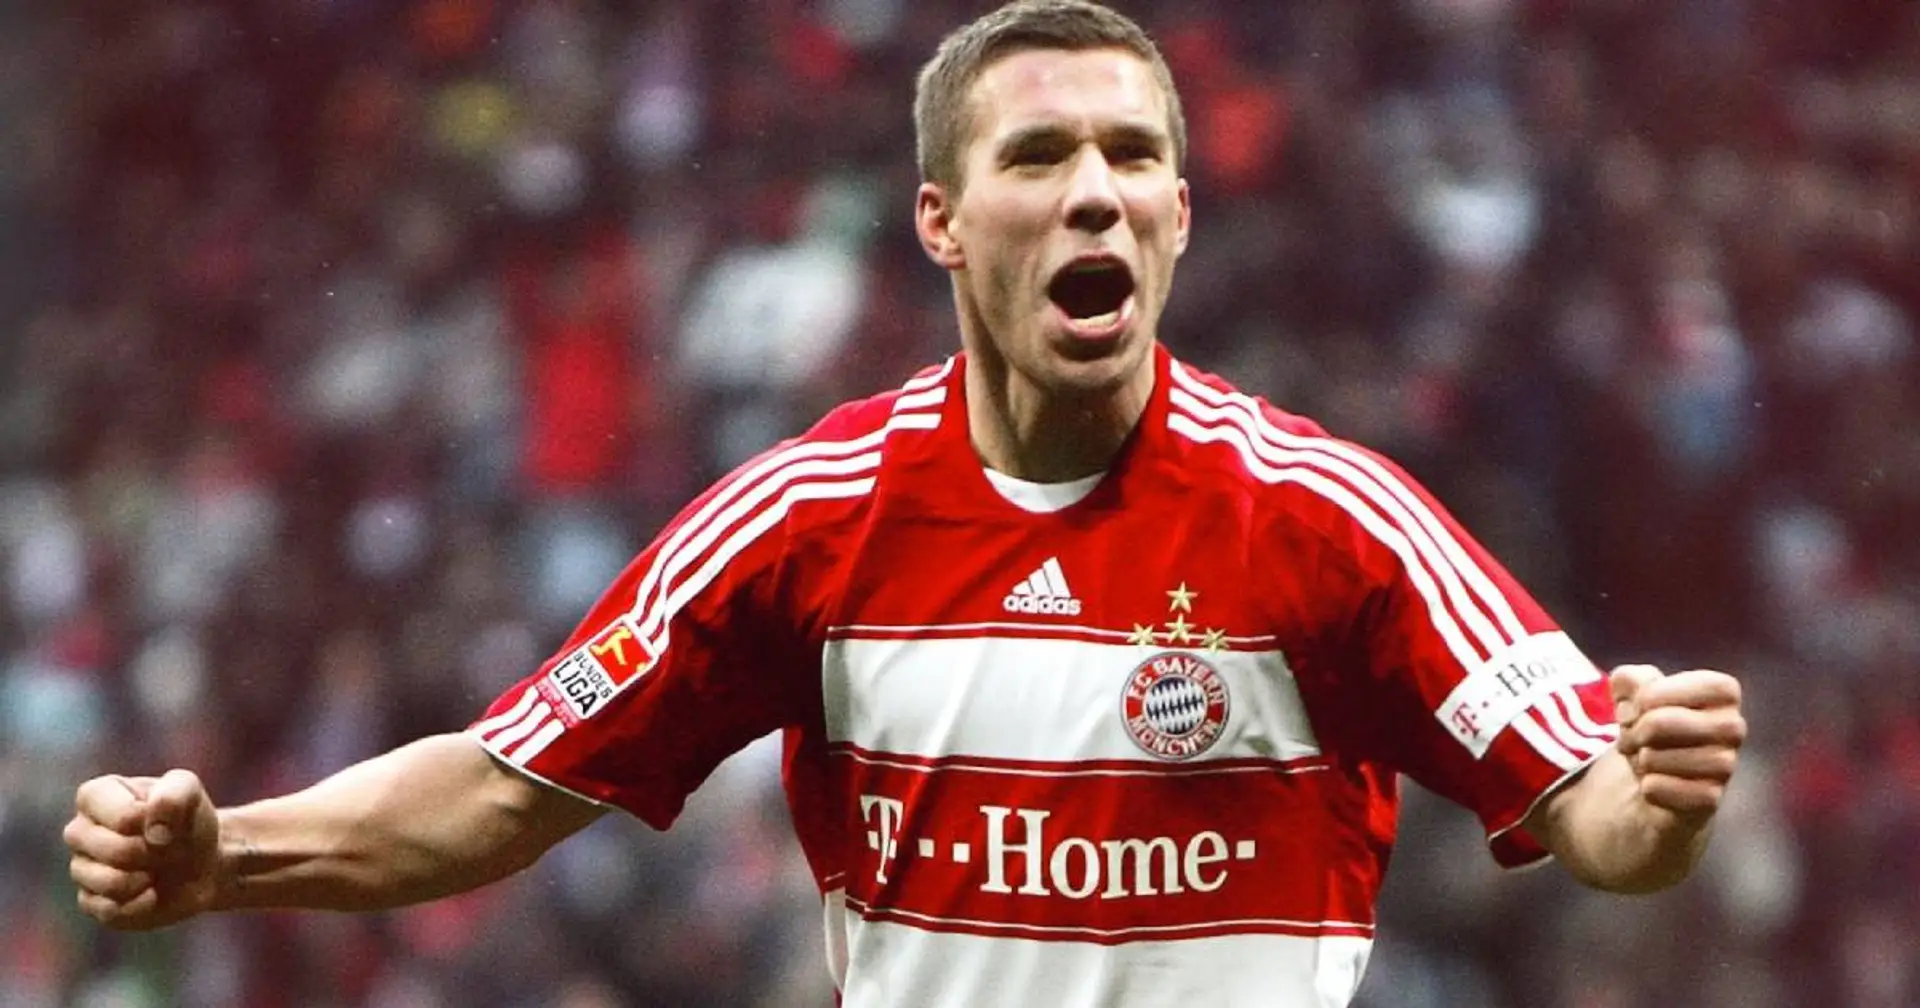 "Vielleicht war ich damals zu jung": Geburtstagskind Podolski blickt auf seinen Wechsel zu Bayern zurück